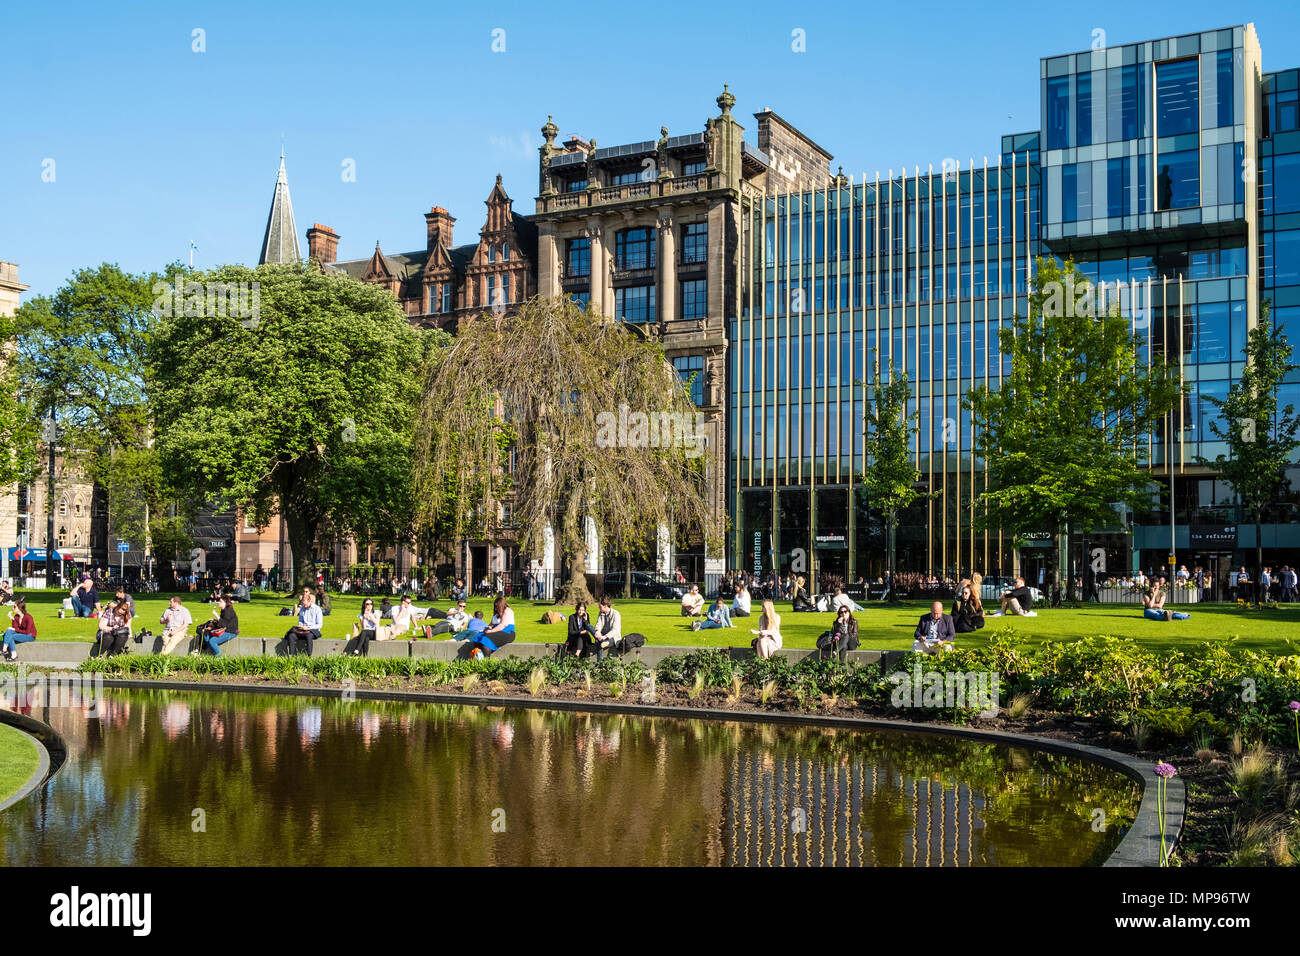 Leute sitzen auf Gras in St Andrews Square in warmen, sonnigen Wetter in Edinburgh, Schottland, Vereinigtes Königreich, Großbritannien Stockfoto